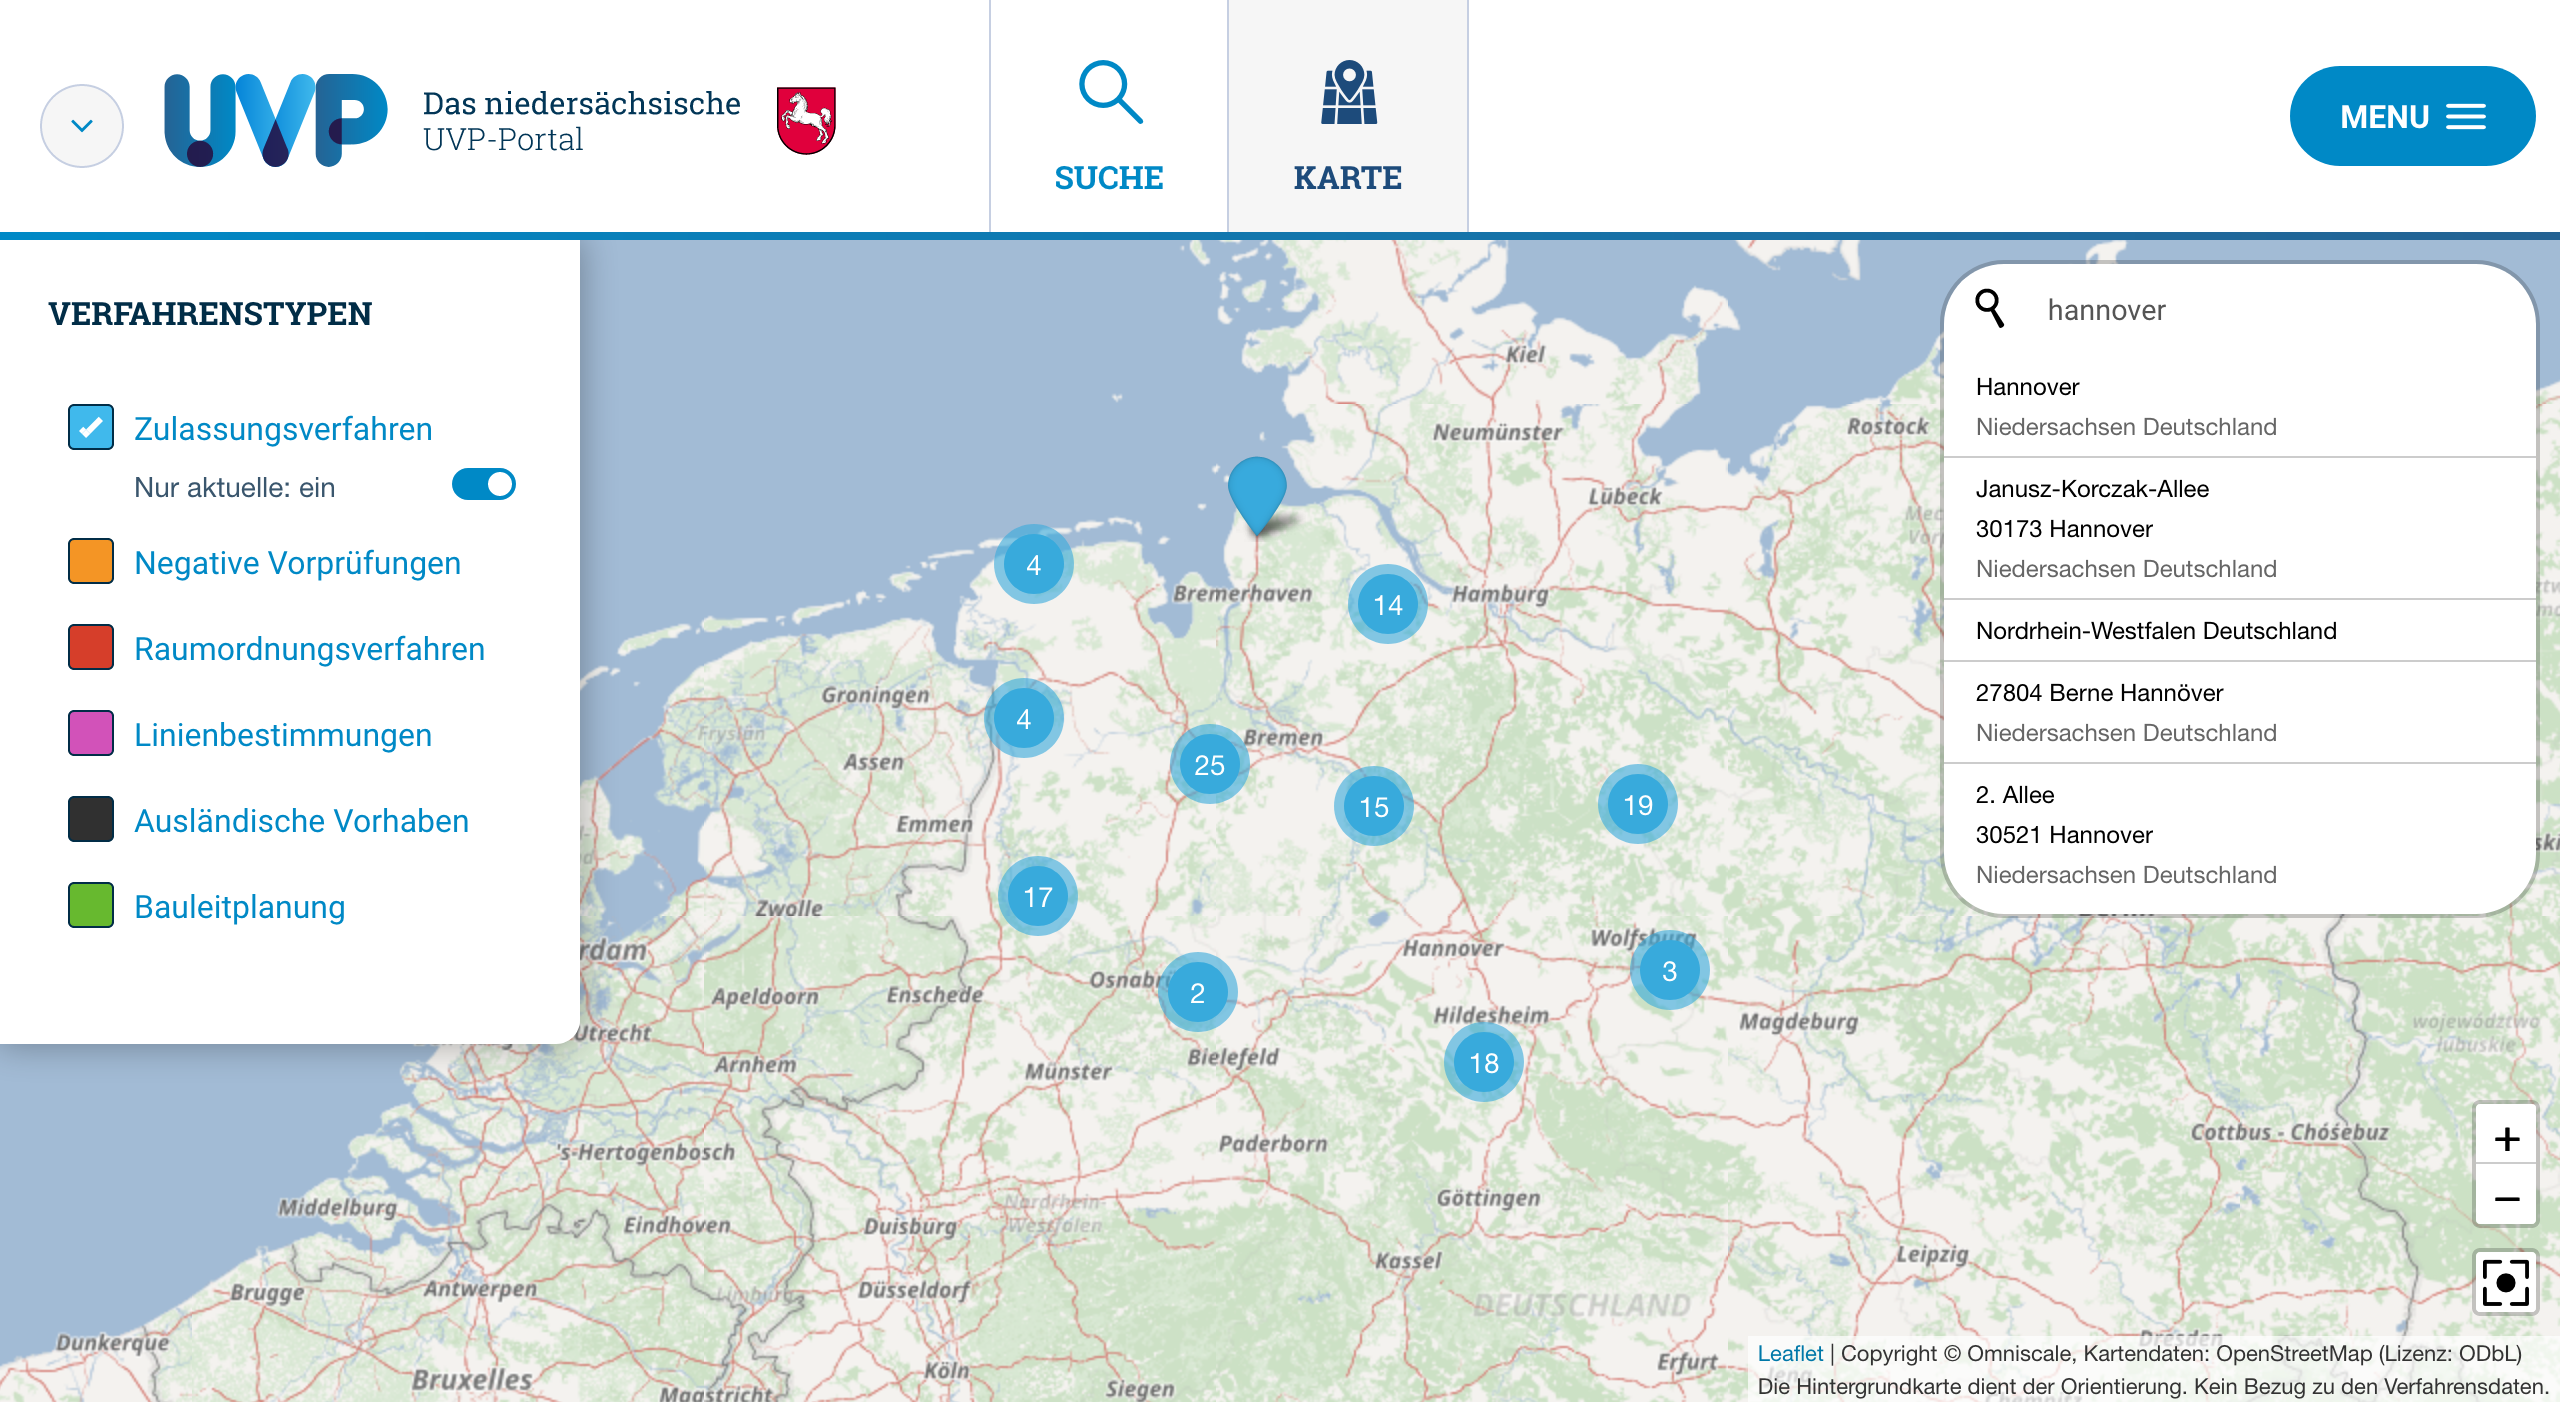 Ortssuche in der Karte des niedersächsischen UVP-Portals auf Basis von Nominatim